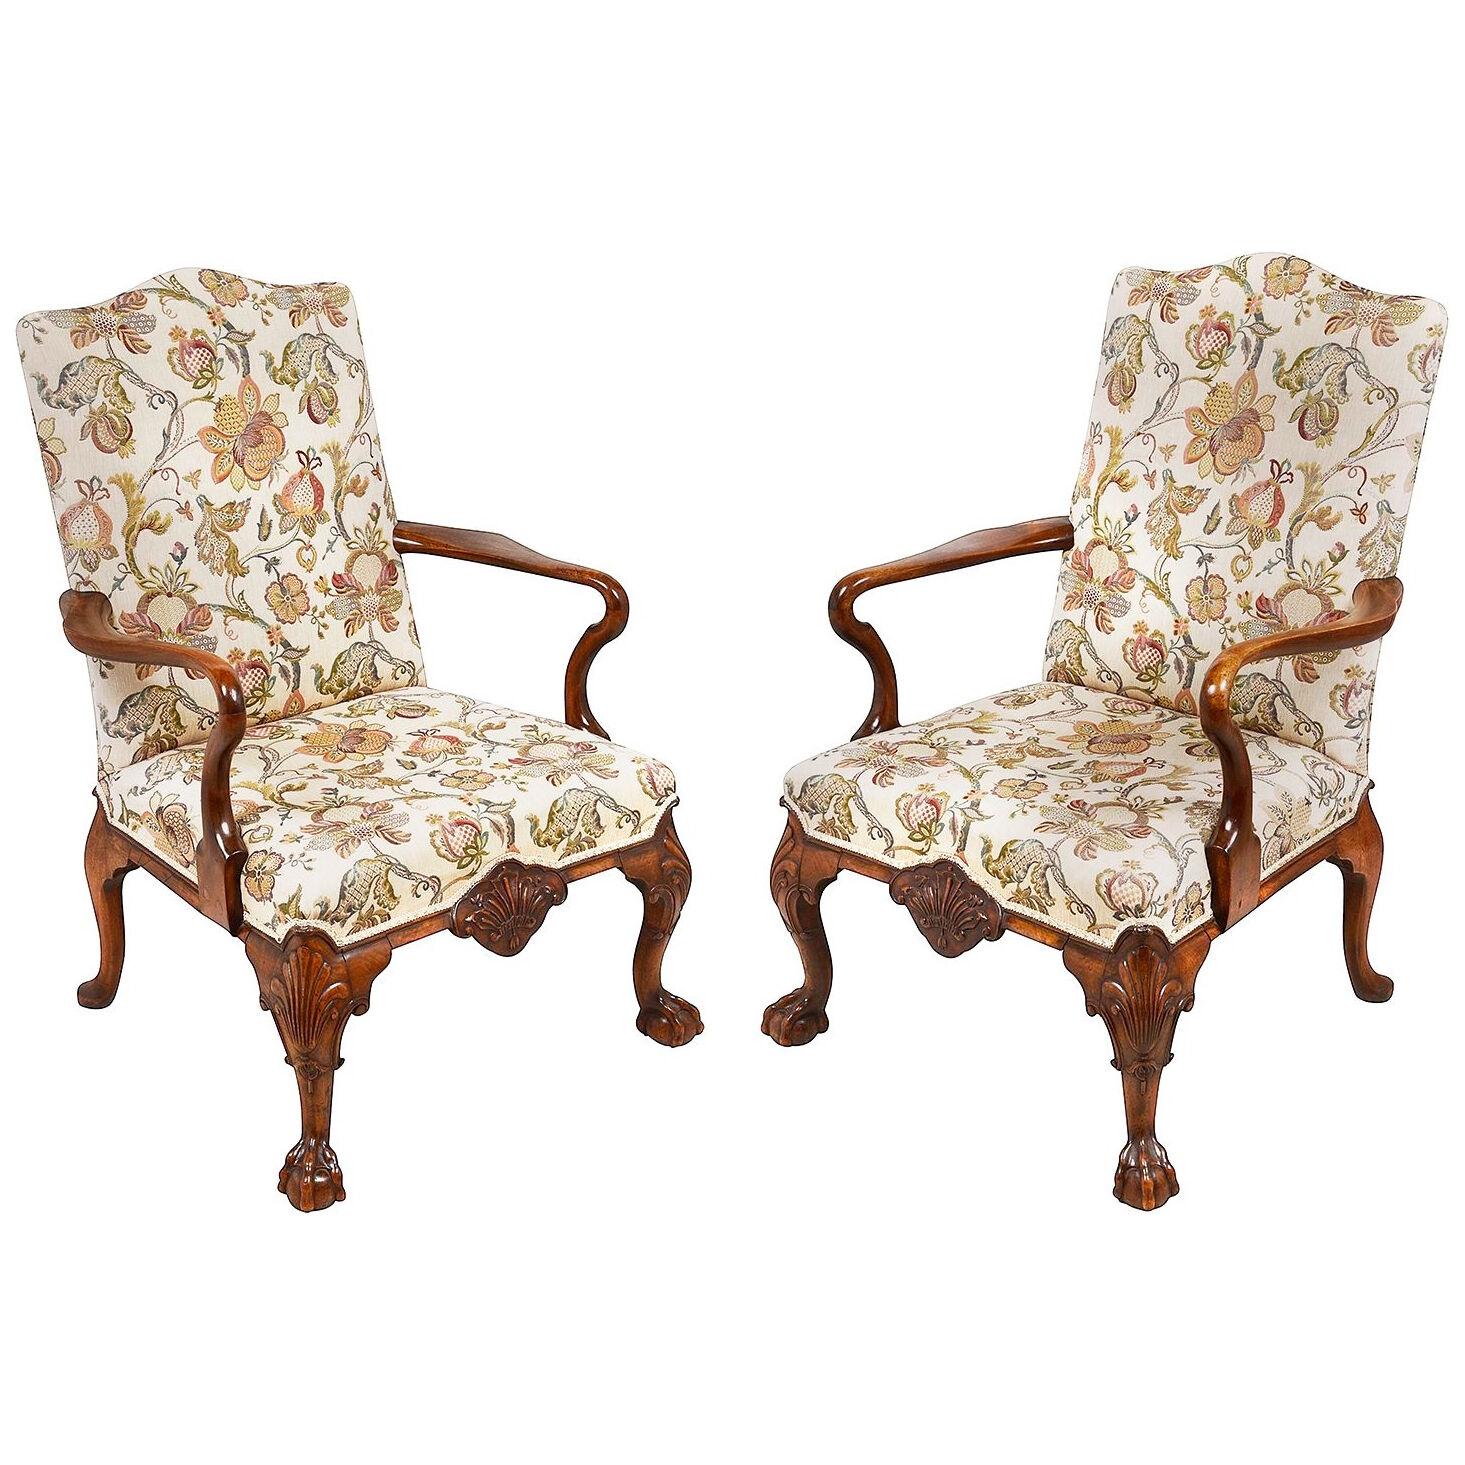 Pair Queen Anne style arm chairs, circa 1900